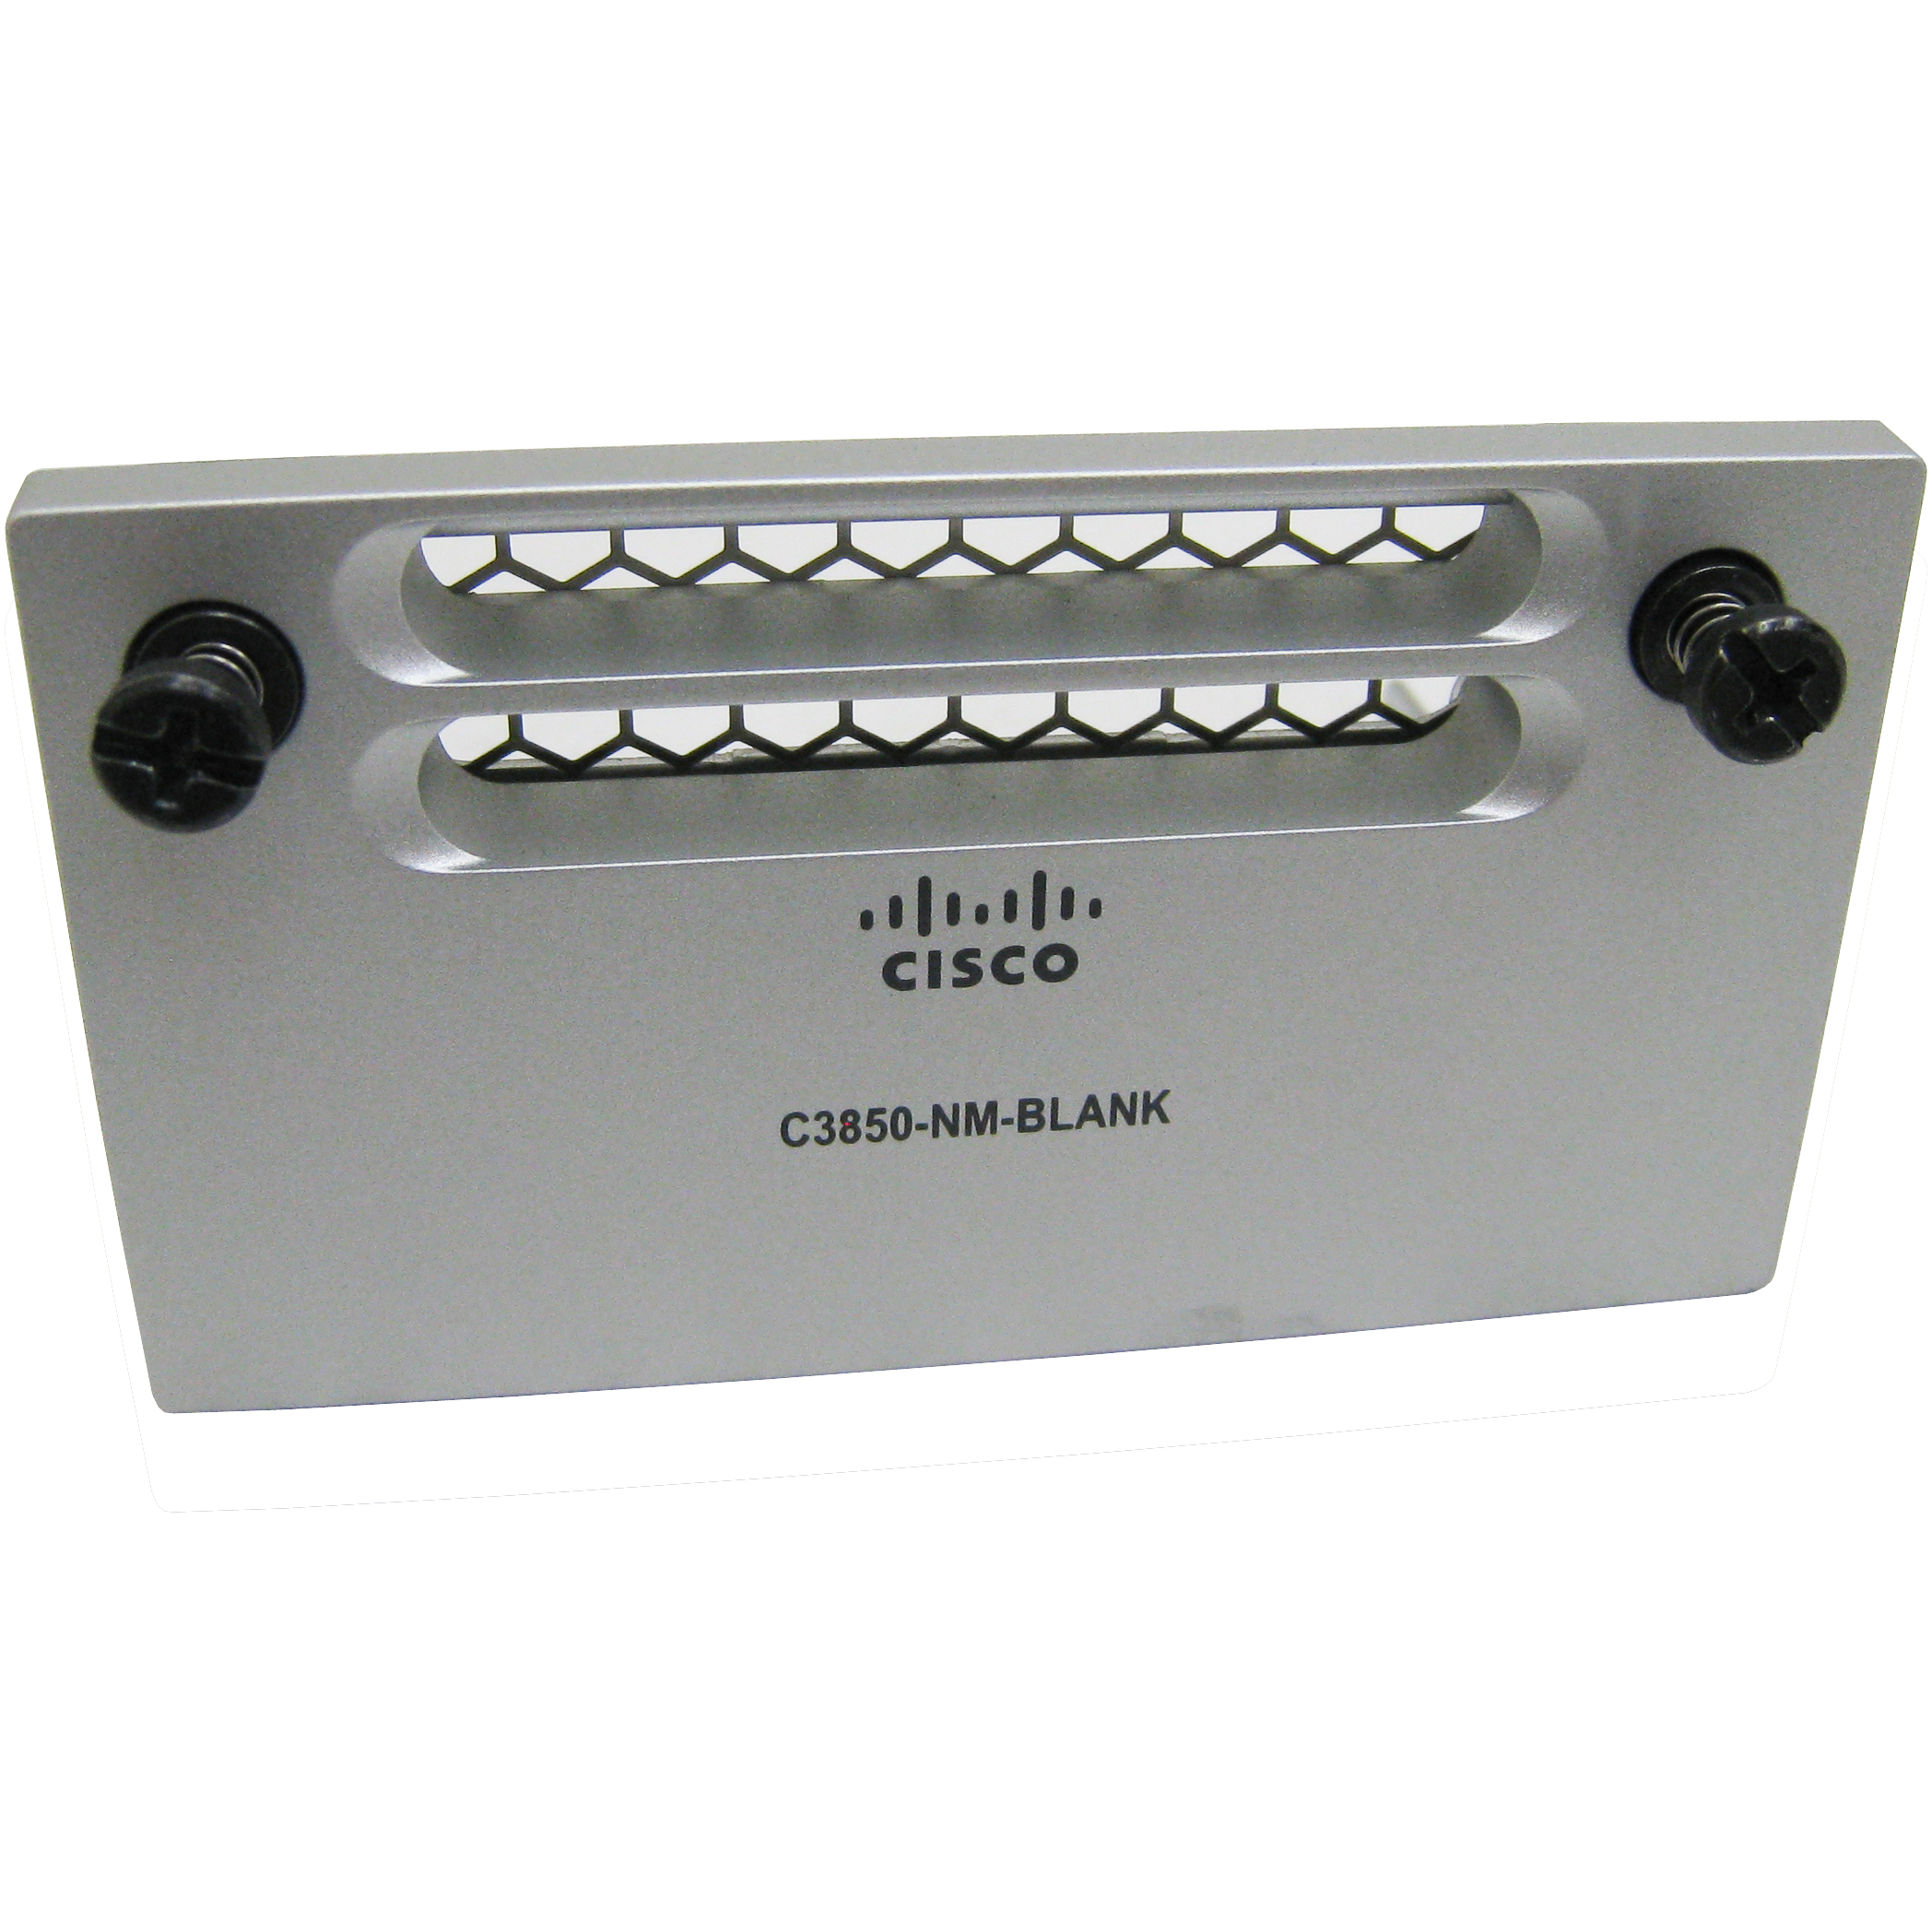 Cisco C3850-NM-BLANK